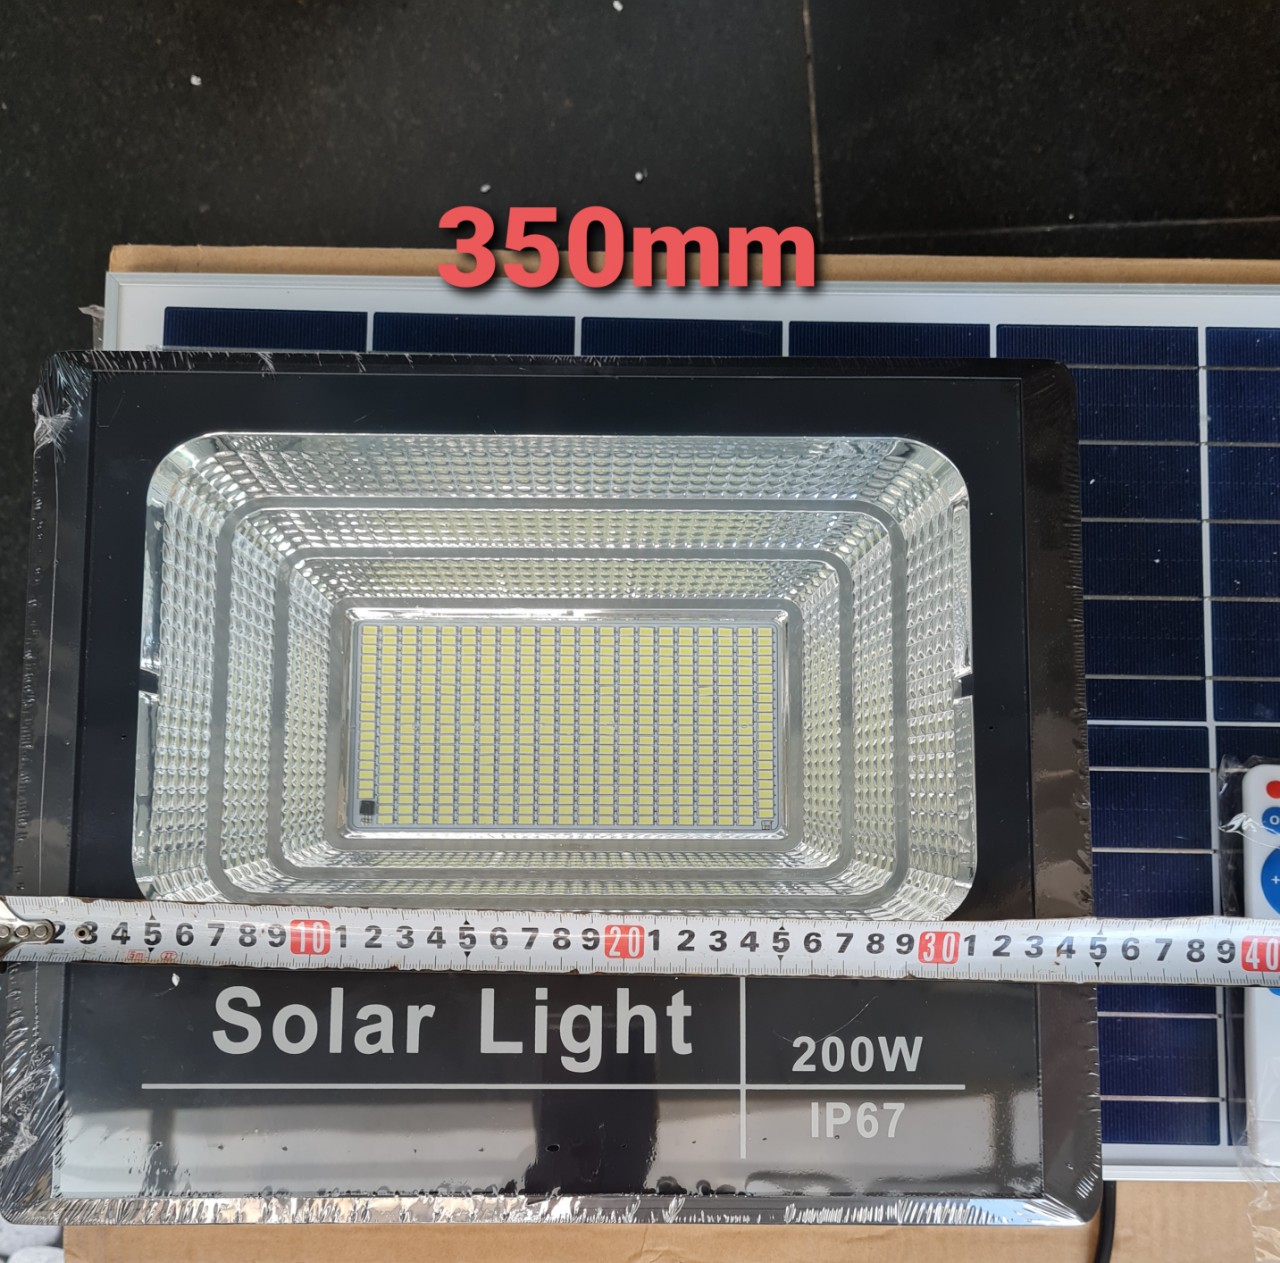 Đèn pha led Năng Lượng Mặt Trời công suất 200w kèm tấm pin rời có remote có cảm biến tự động dây nối